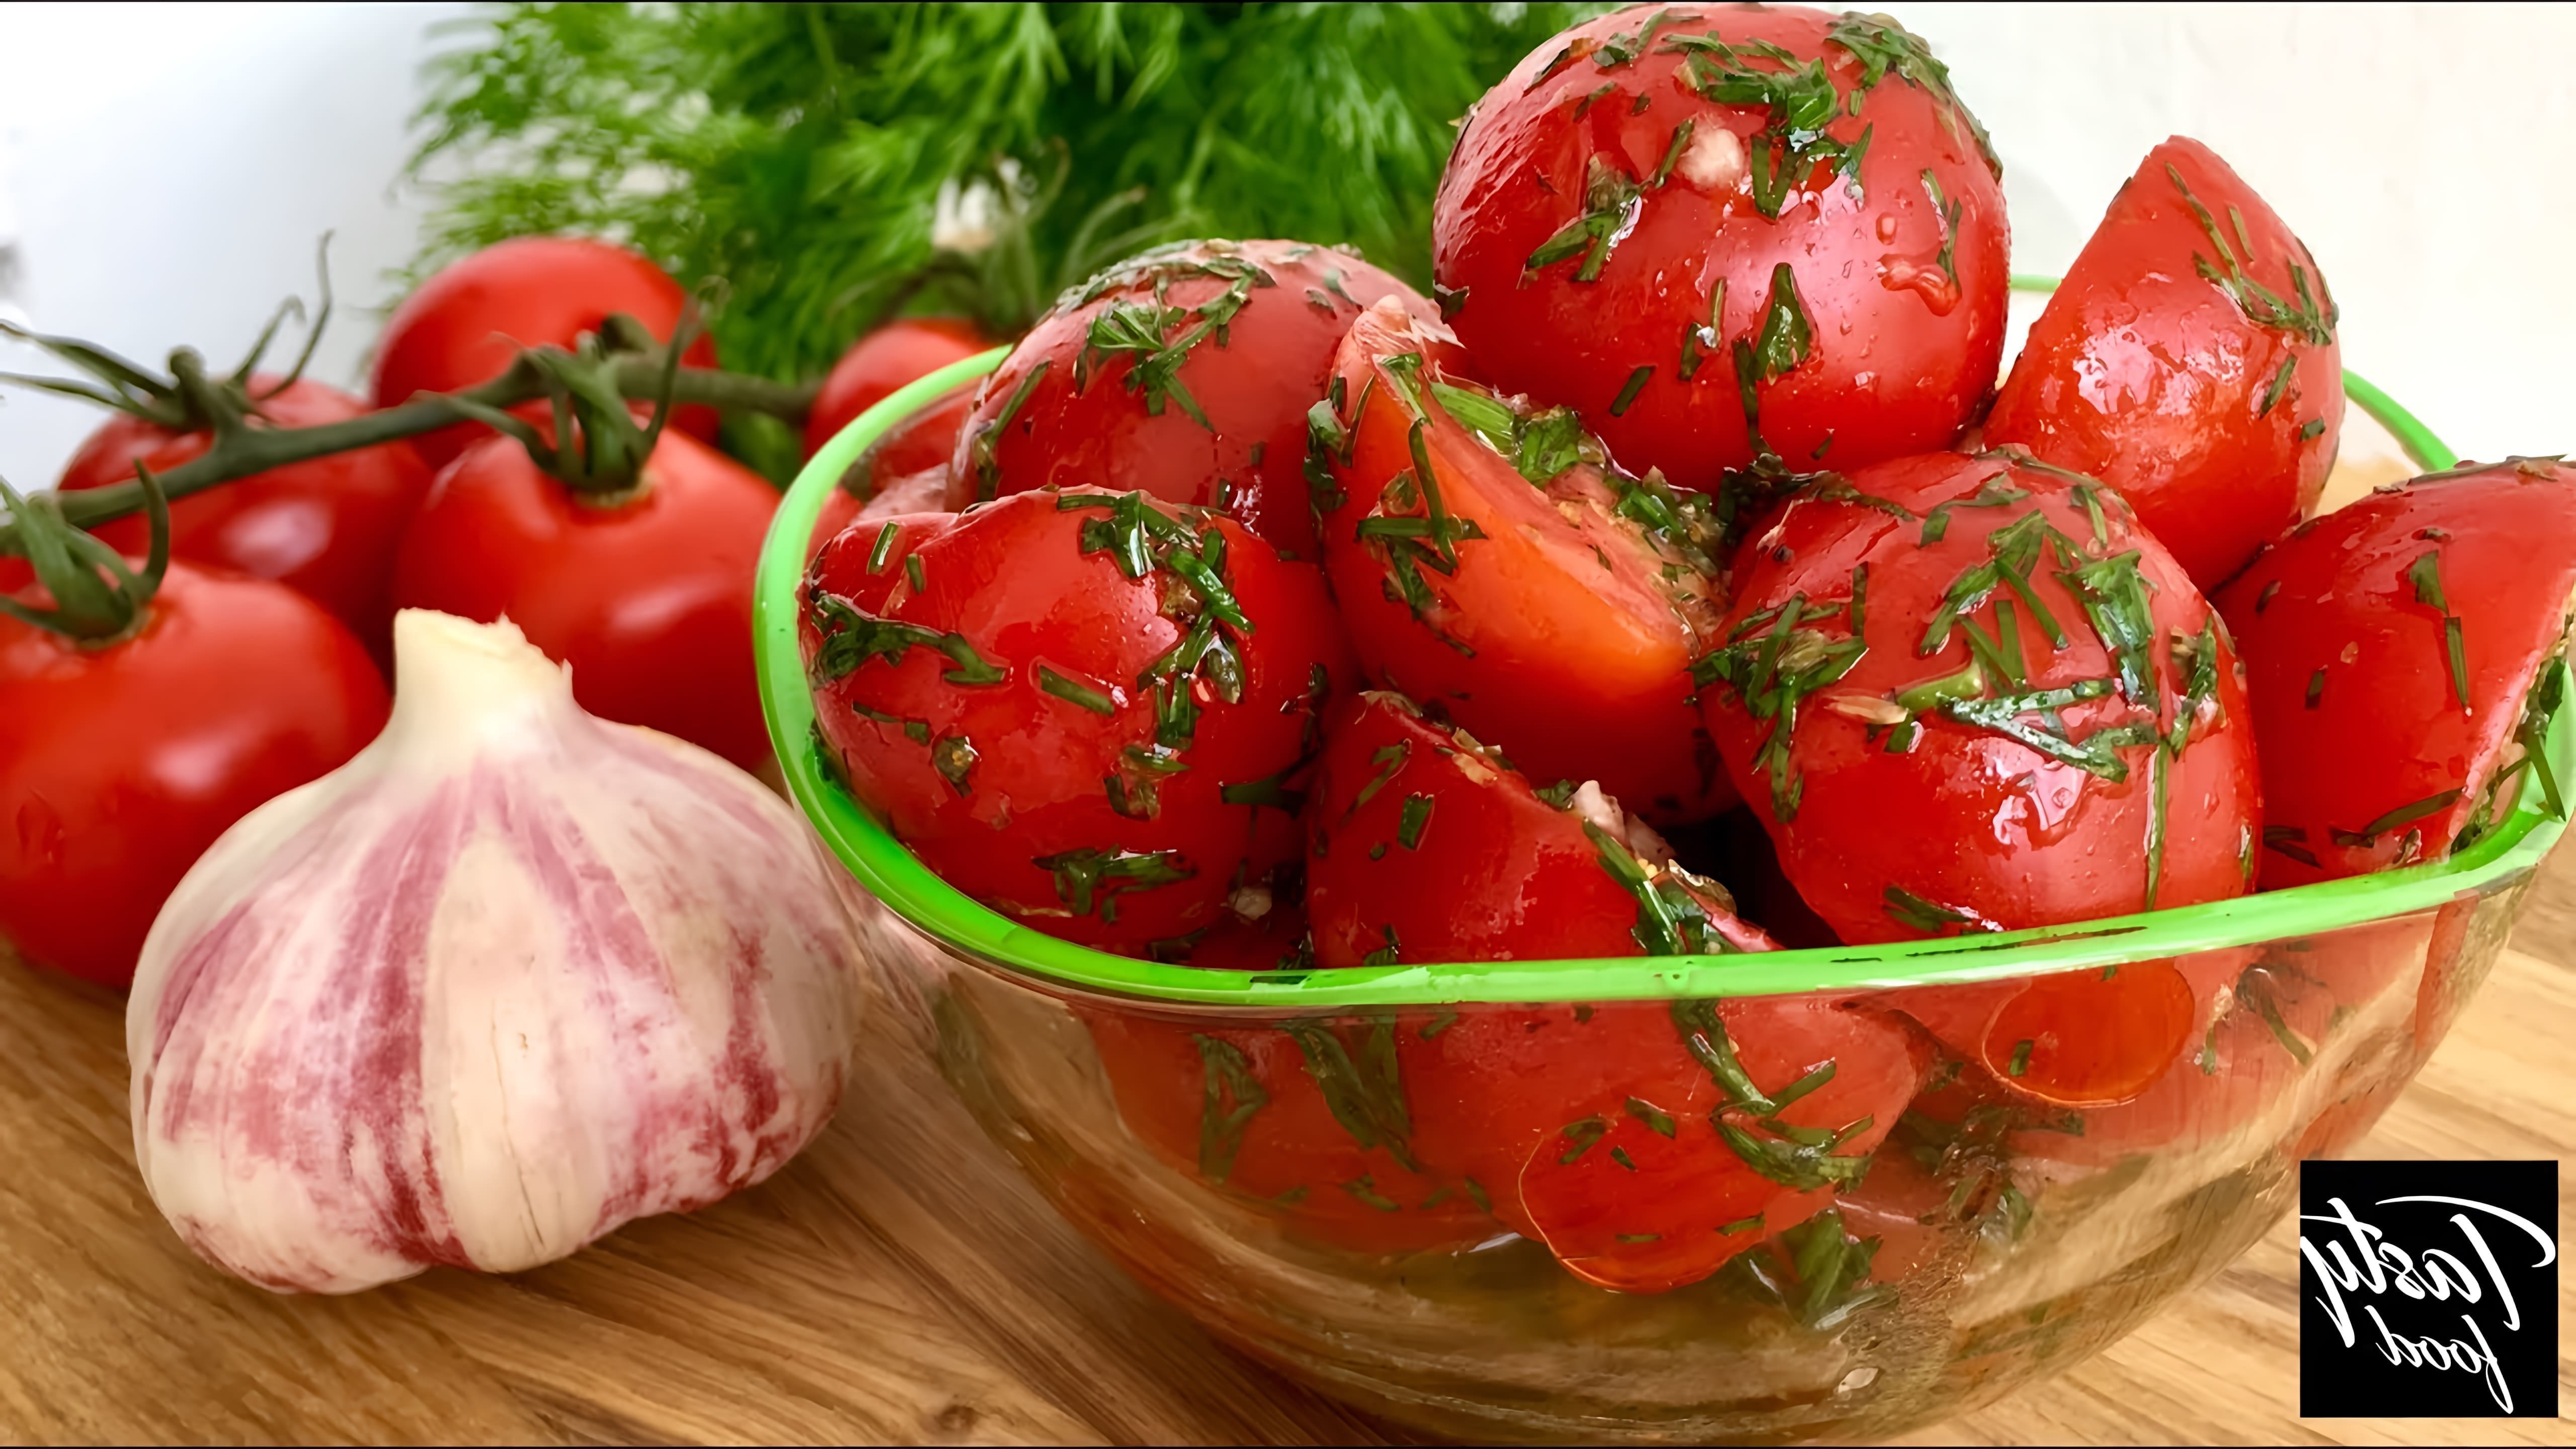 В этом видео демонстрируется рецепт вкусной закуски из помидоров, которая готовится очень просто и быстро